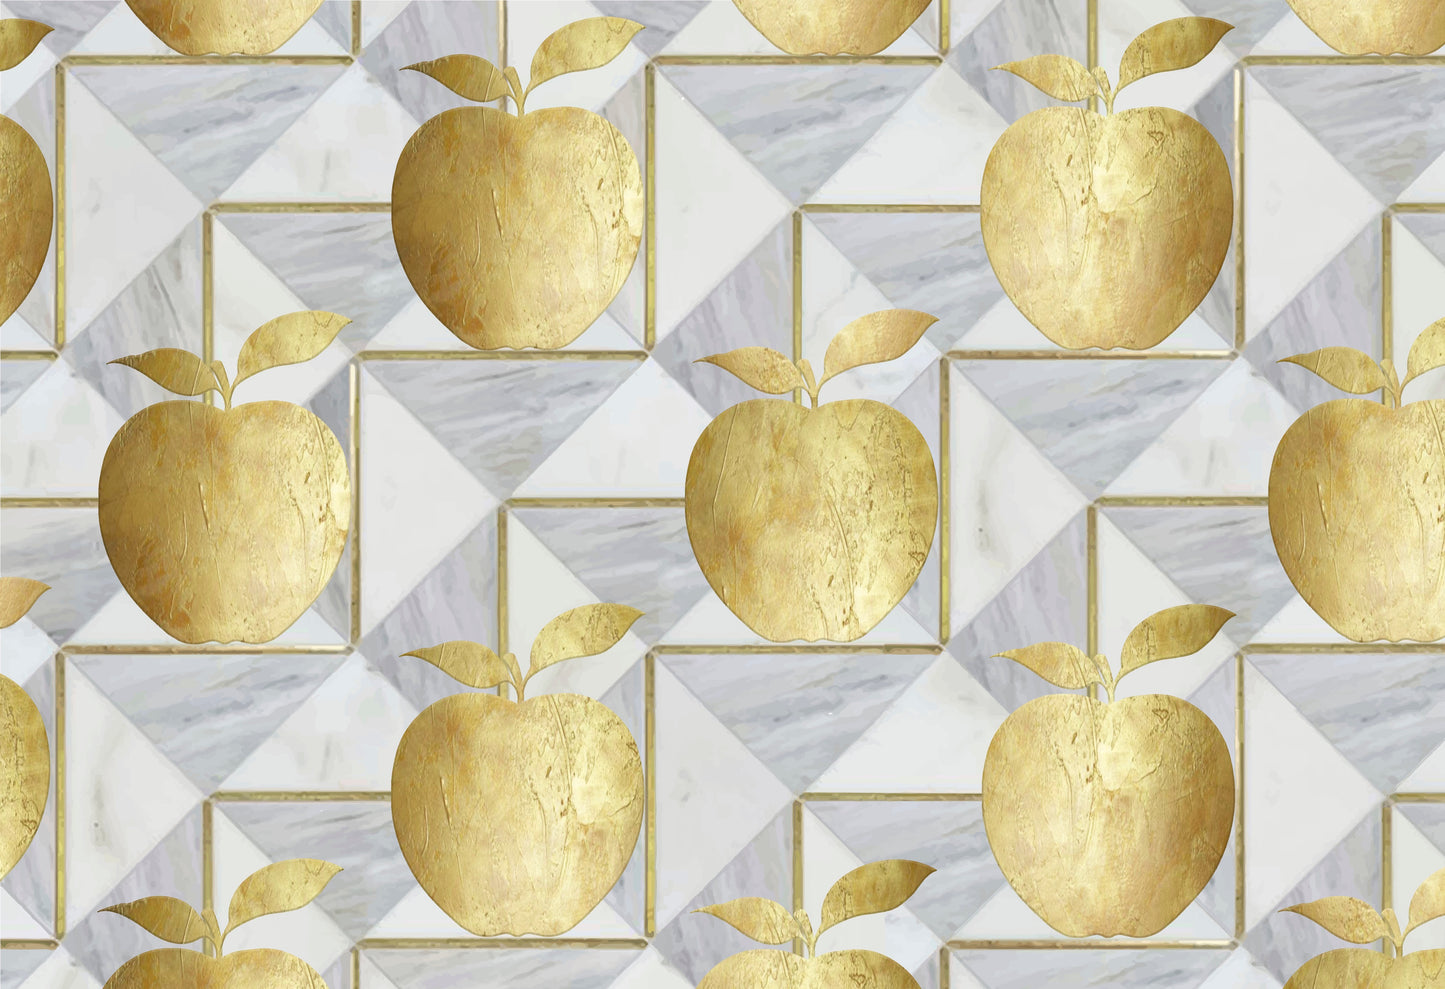 Golden Apple - Placemat